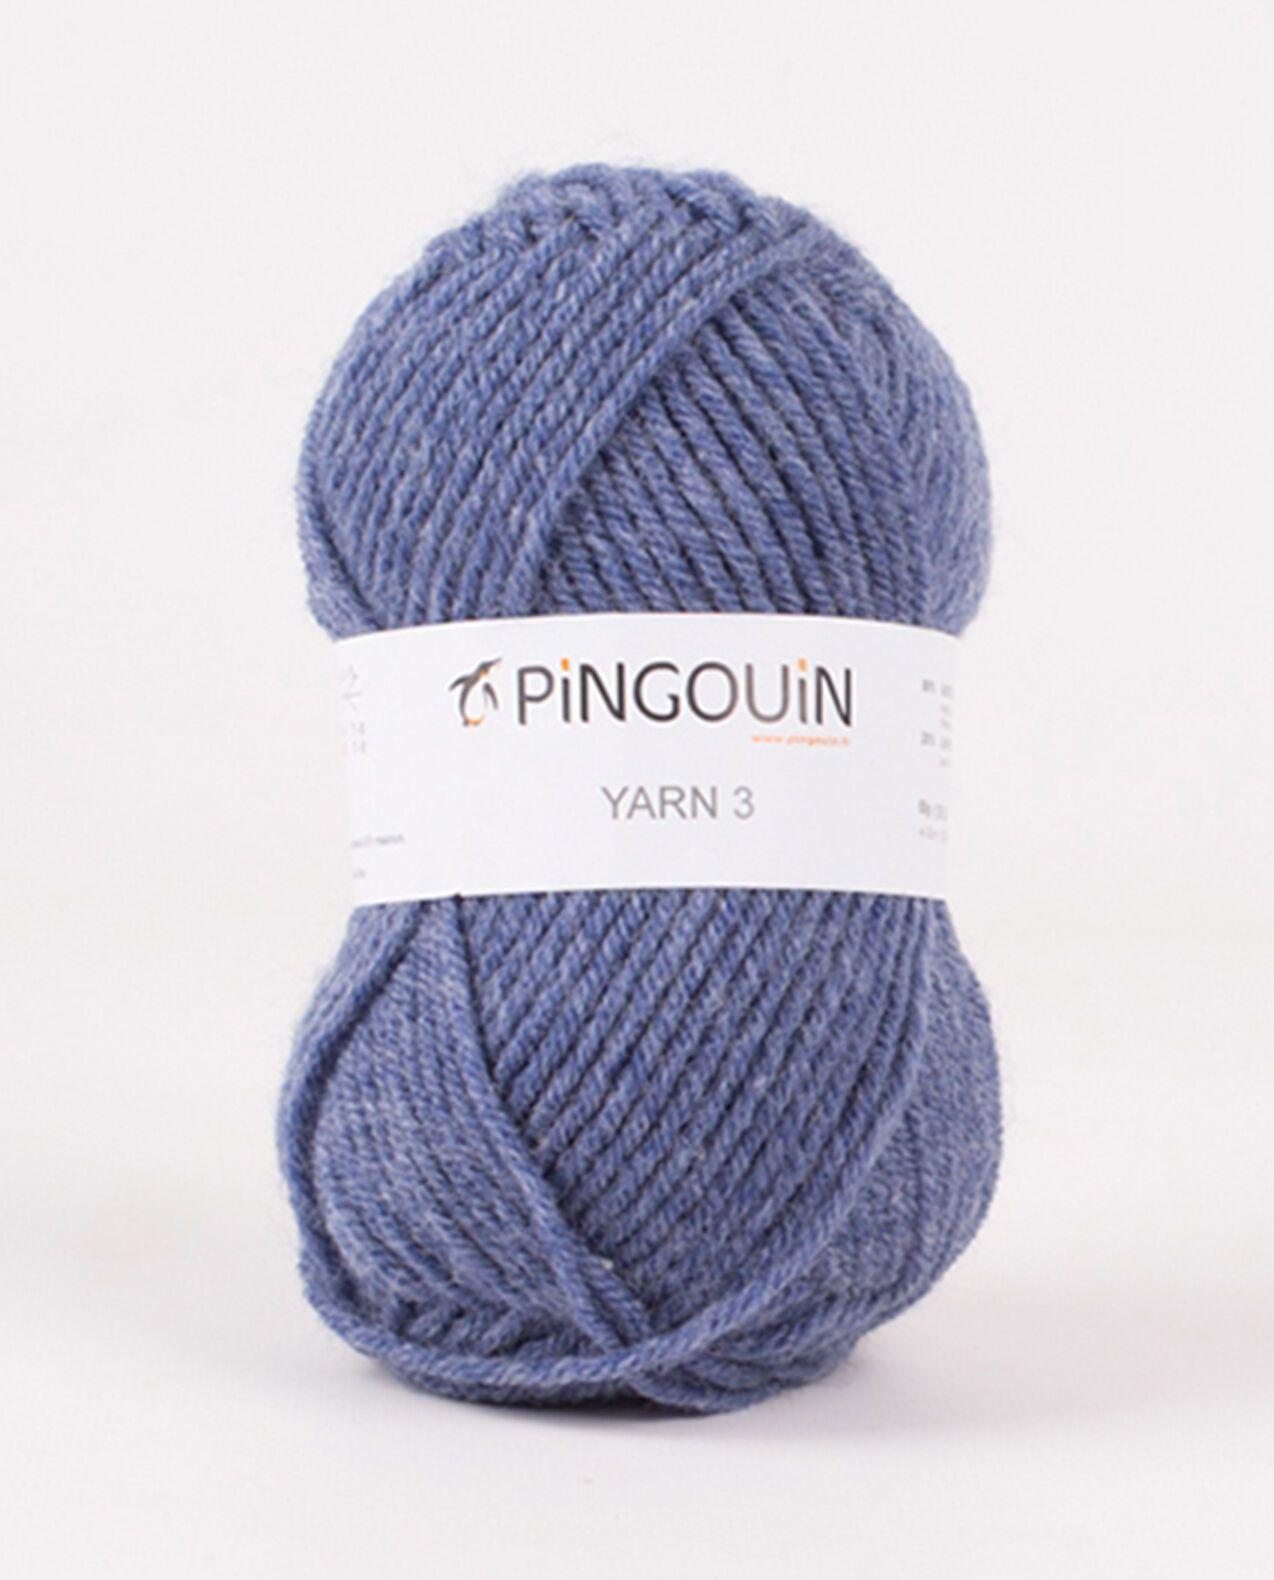 Pelote de laine à tricoter PINGOUIN LE YARN 3 - Pingouin